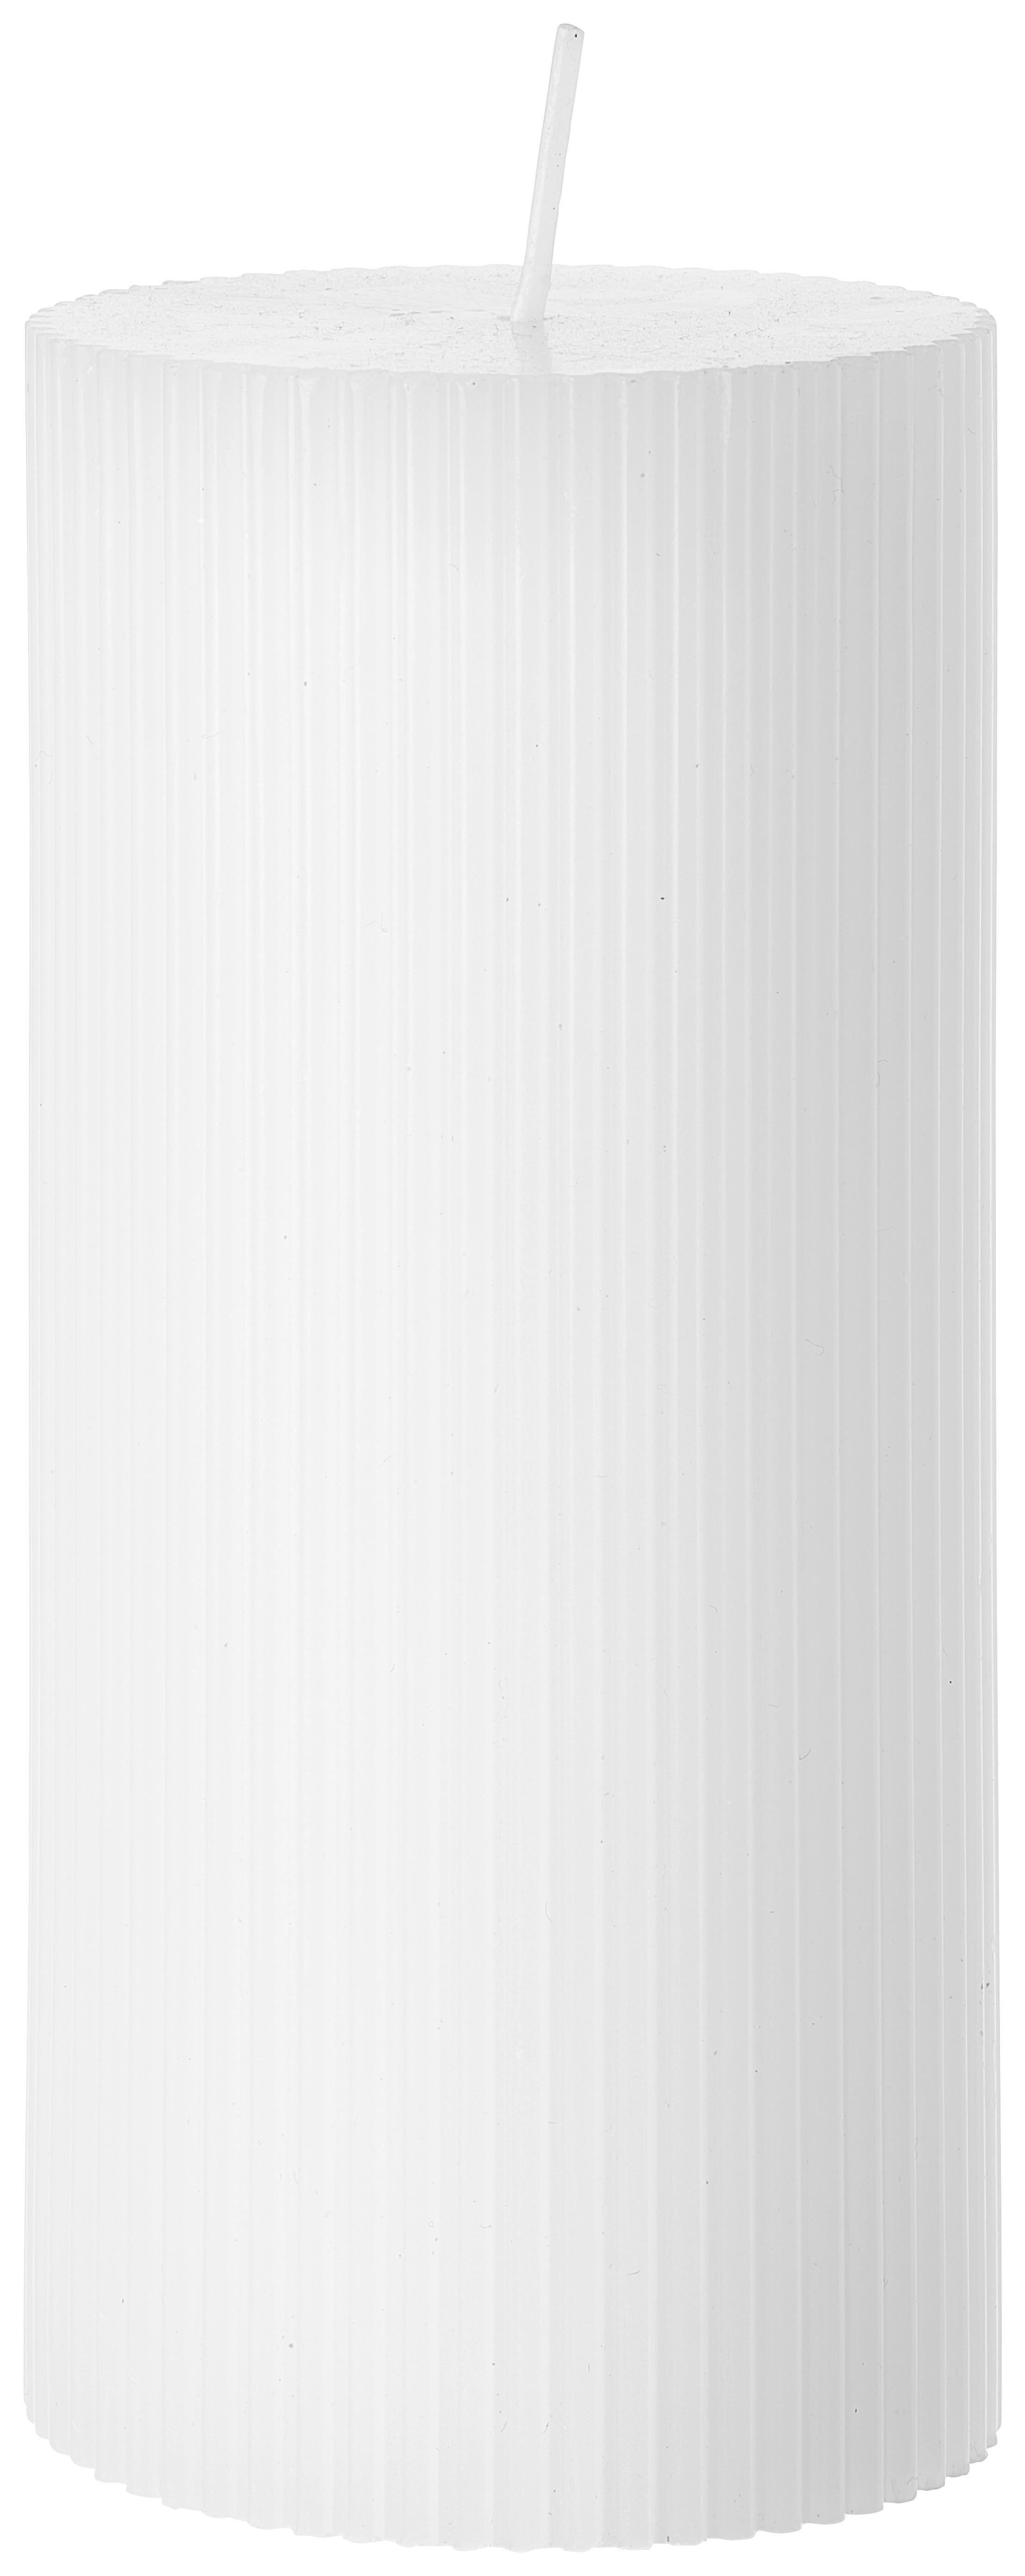 Válcová Svíčka Stripes - bílá/růžová, přírodní materiály (7/15cm) - Premium Living